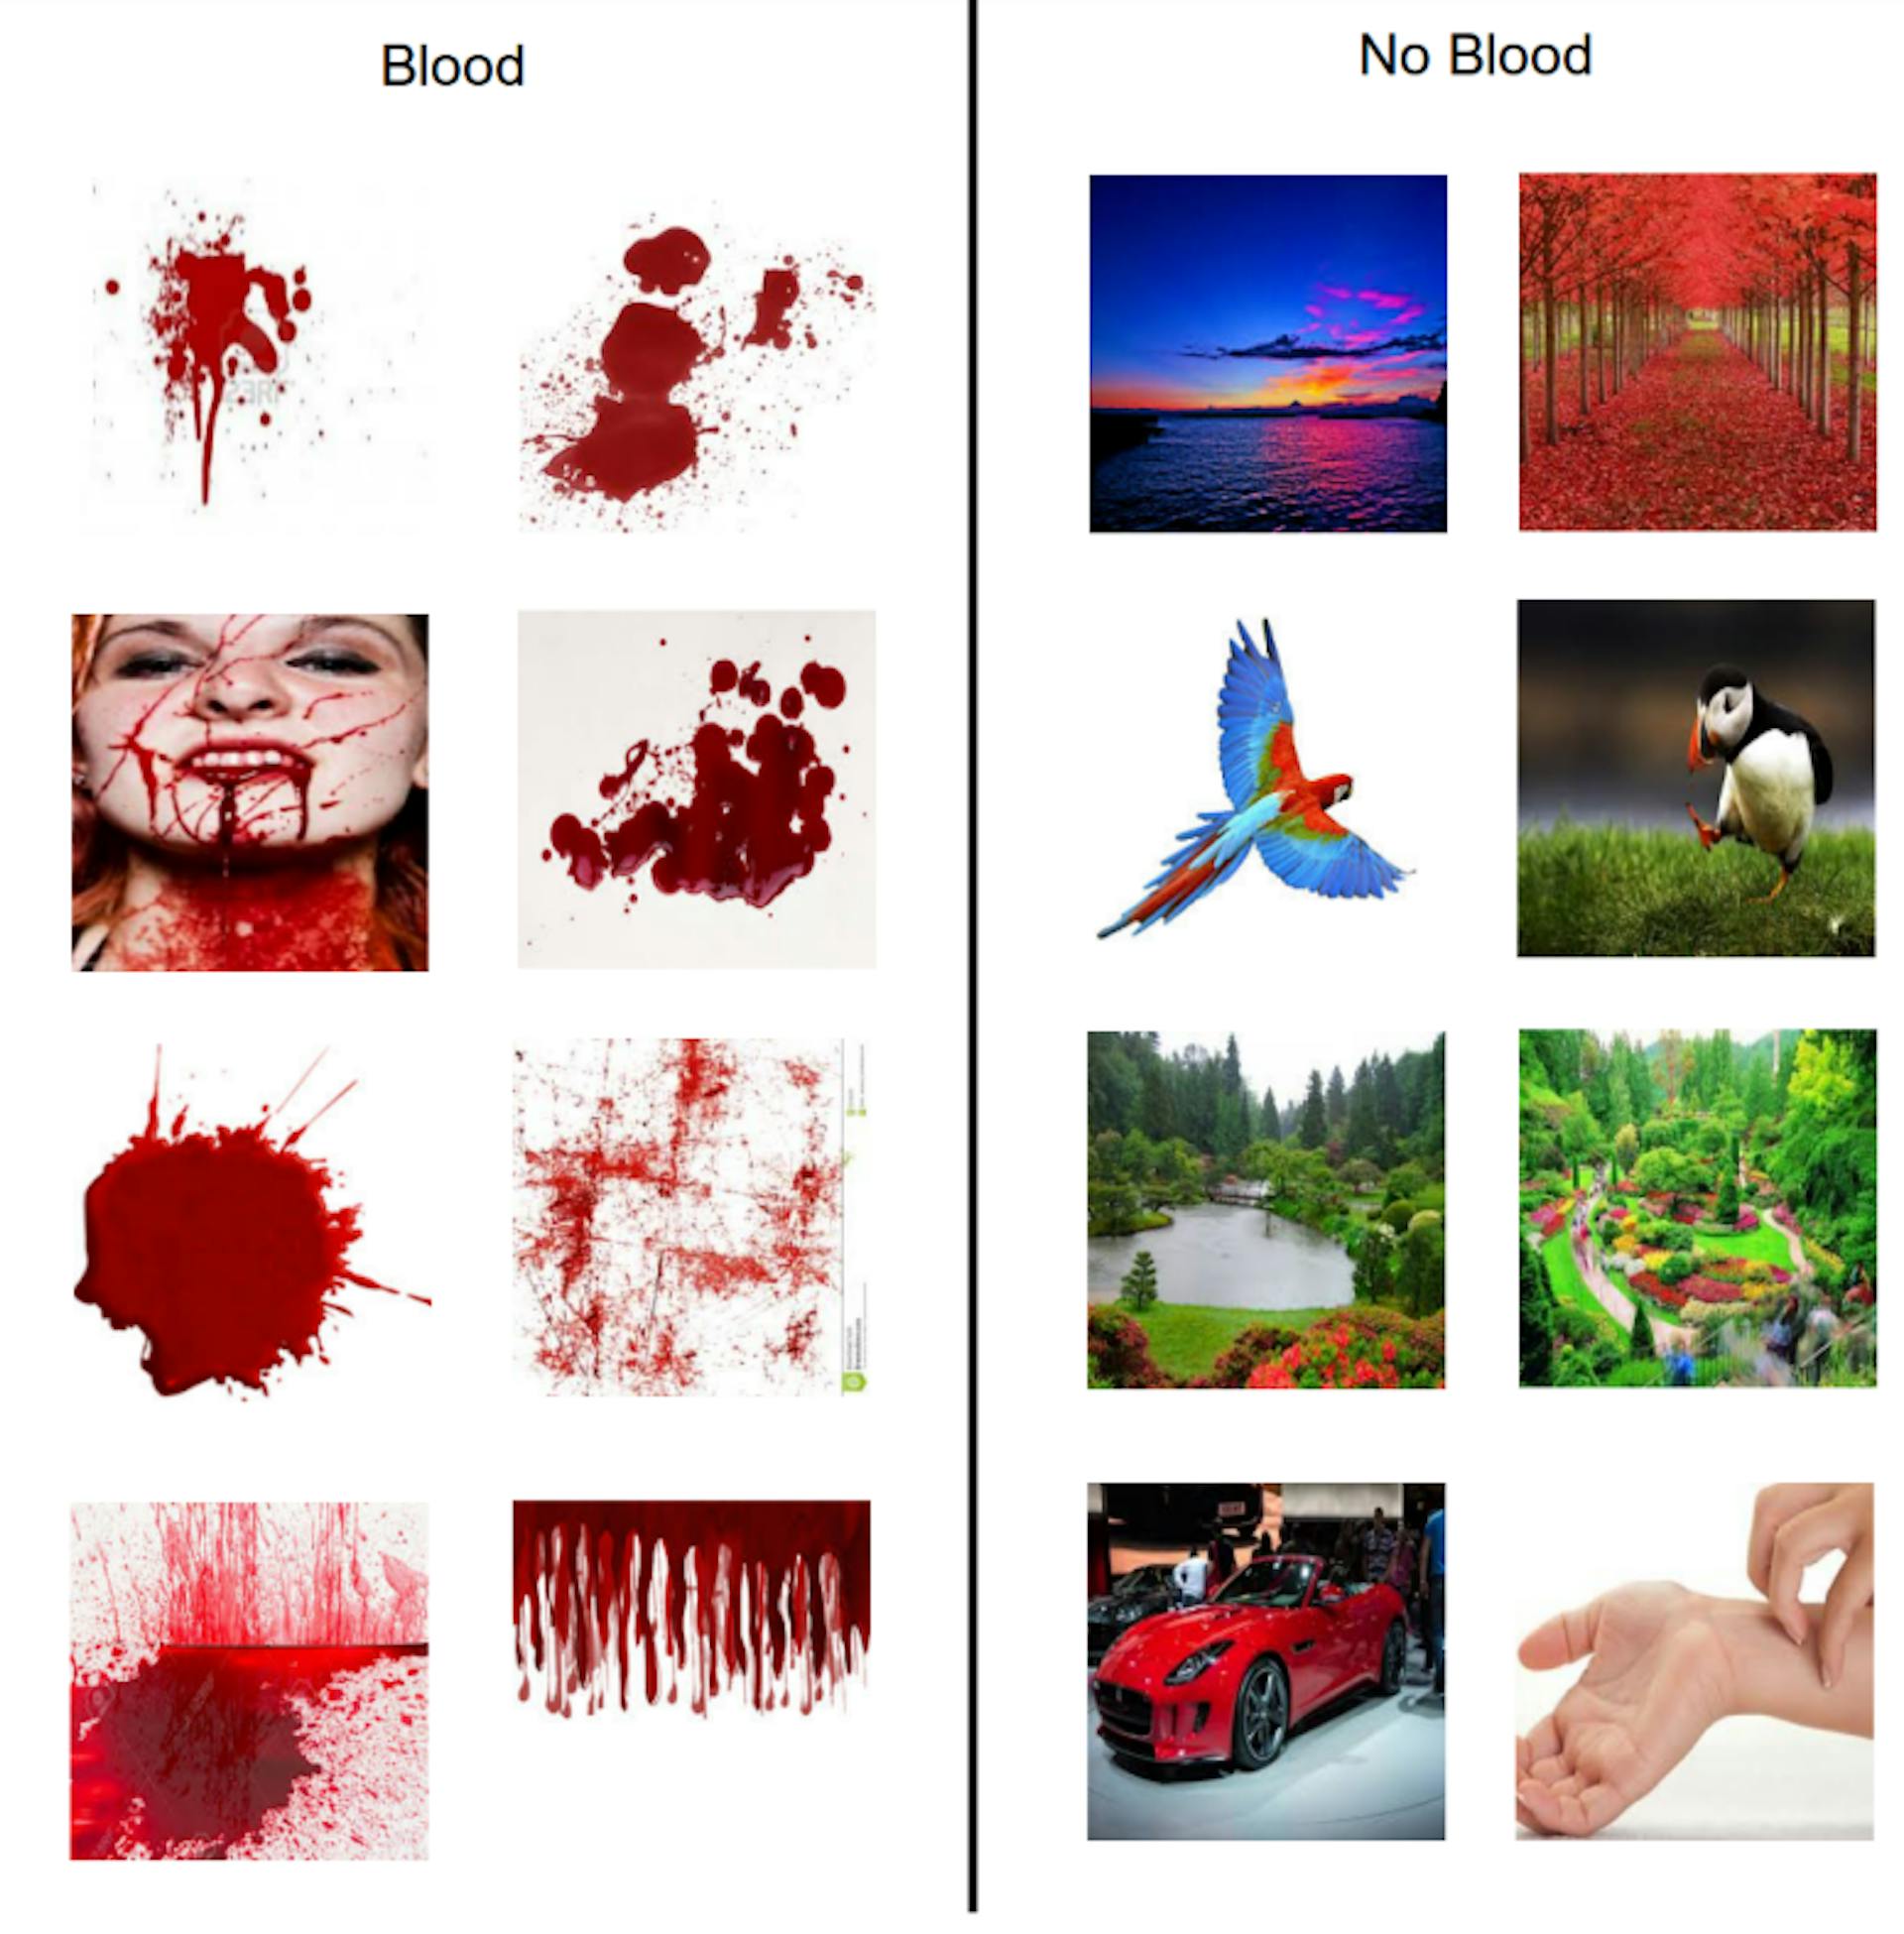 图 3.3：该图显示了从 Google 下载的用于生成血液和非血液模型的示例图像。